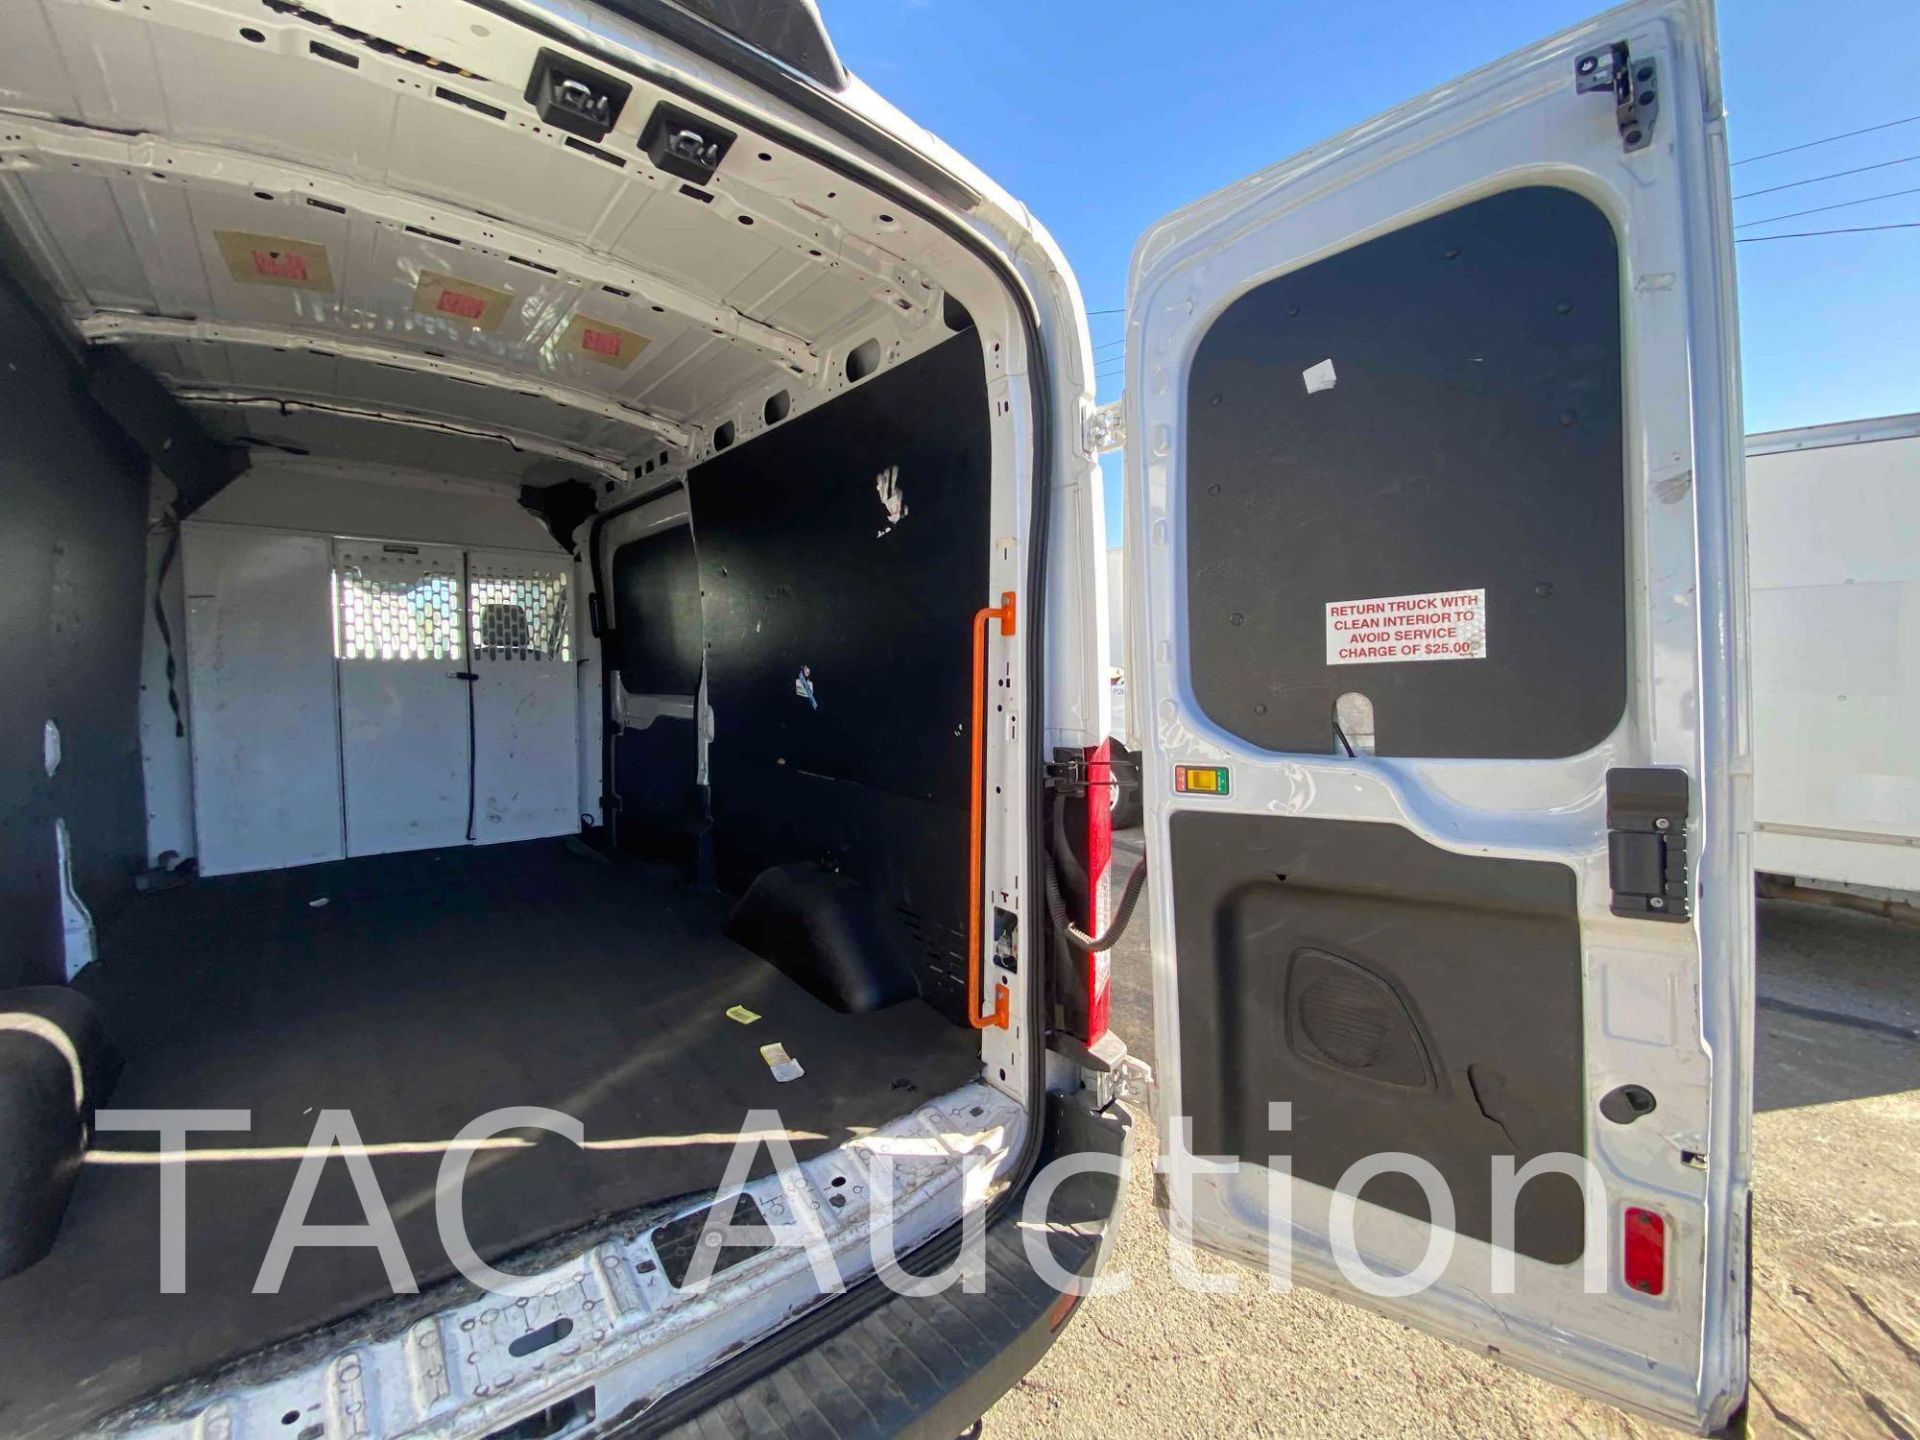 2019 Ford Transit 150 Cargo Van - Image 11 of 56